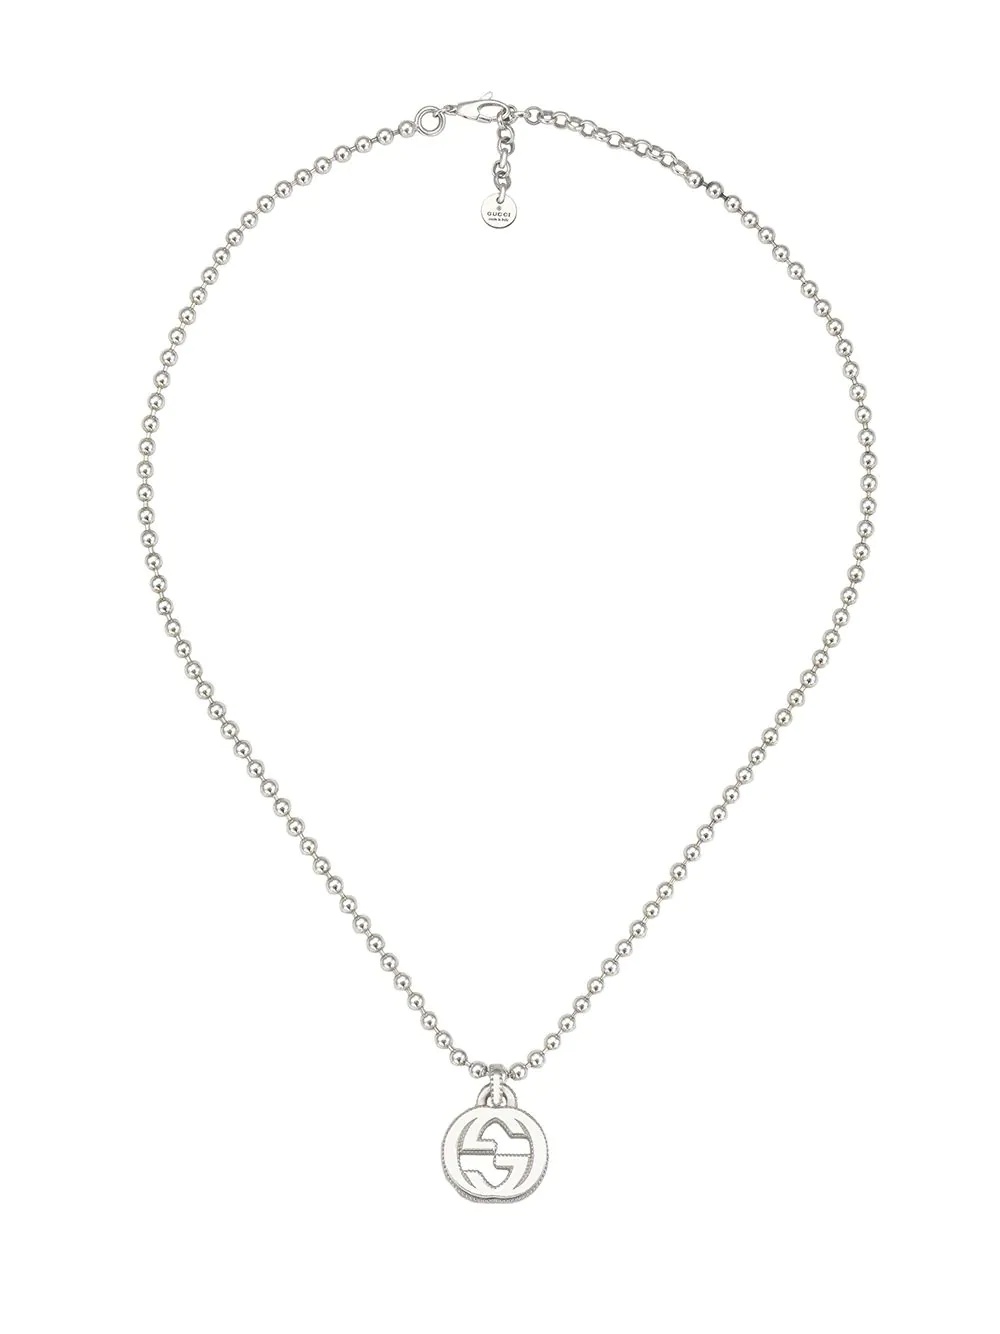 Interlocking G necklace in silver - 1